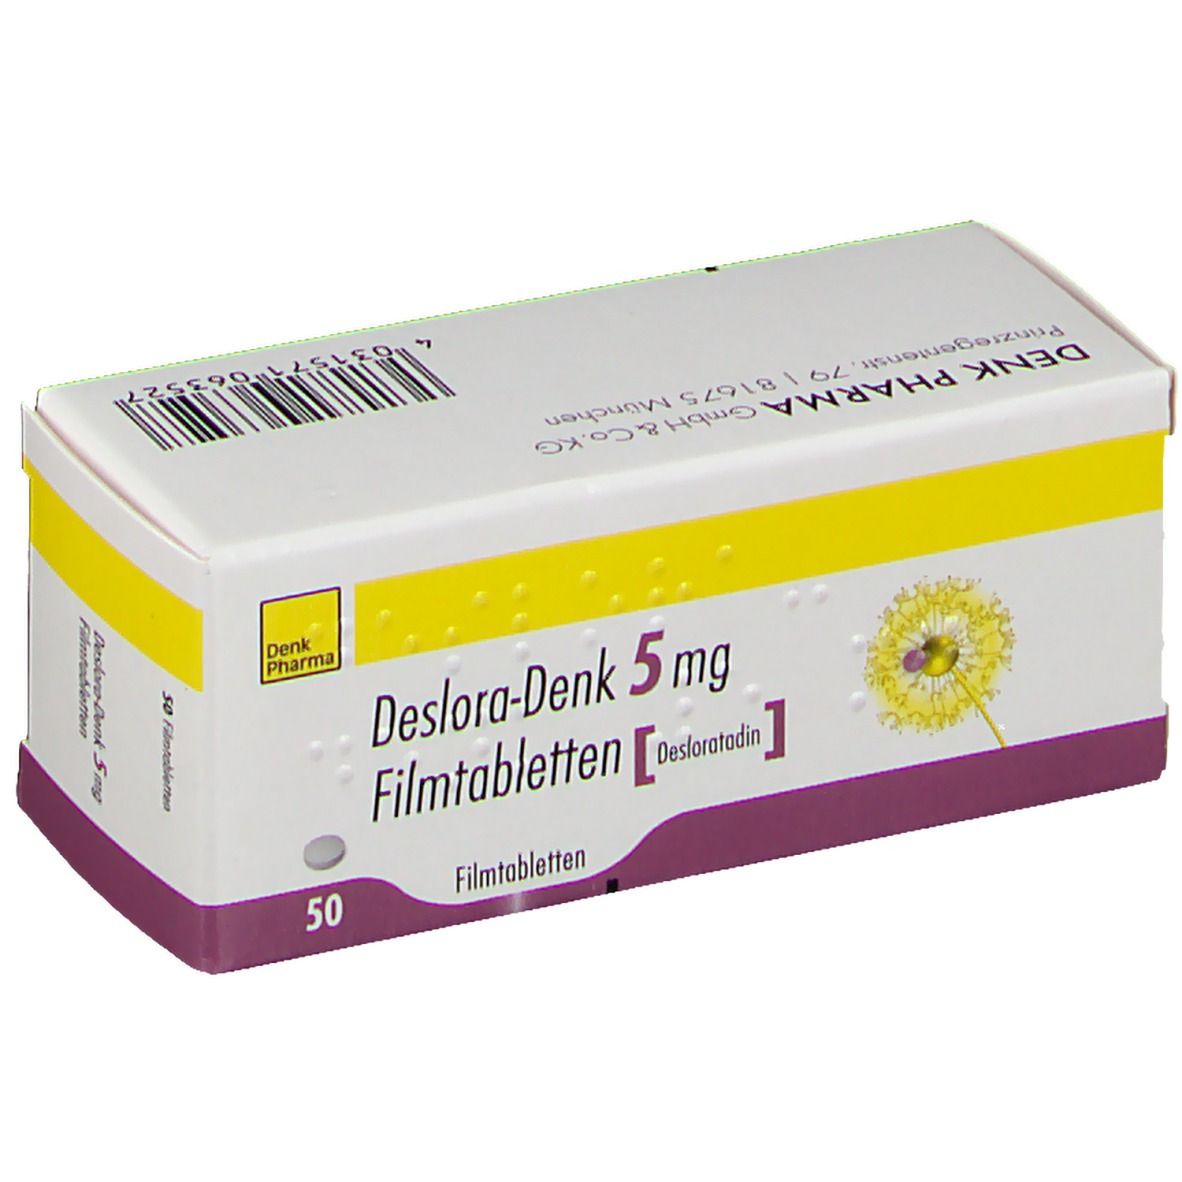 Deslora-Denk 5 mg